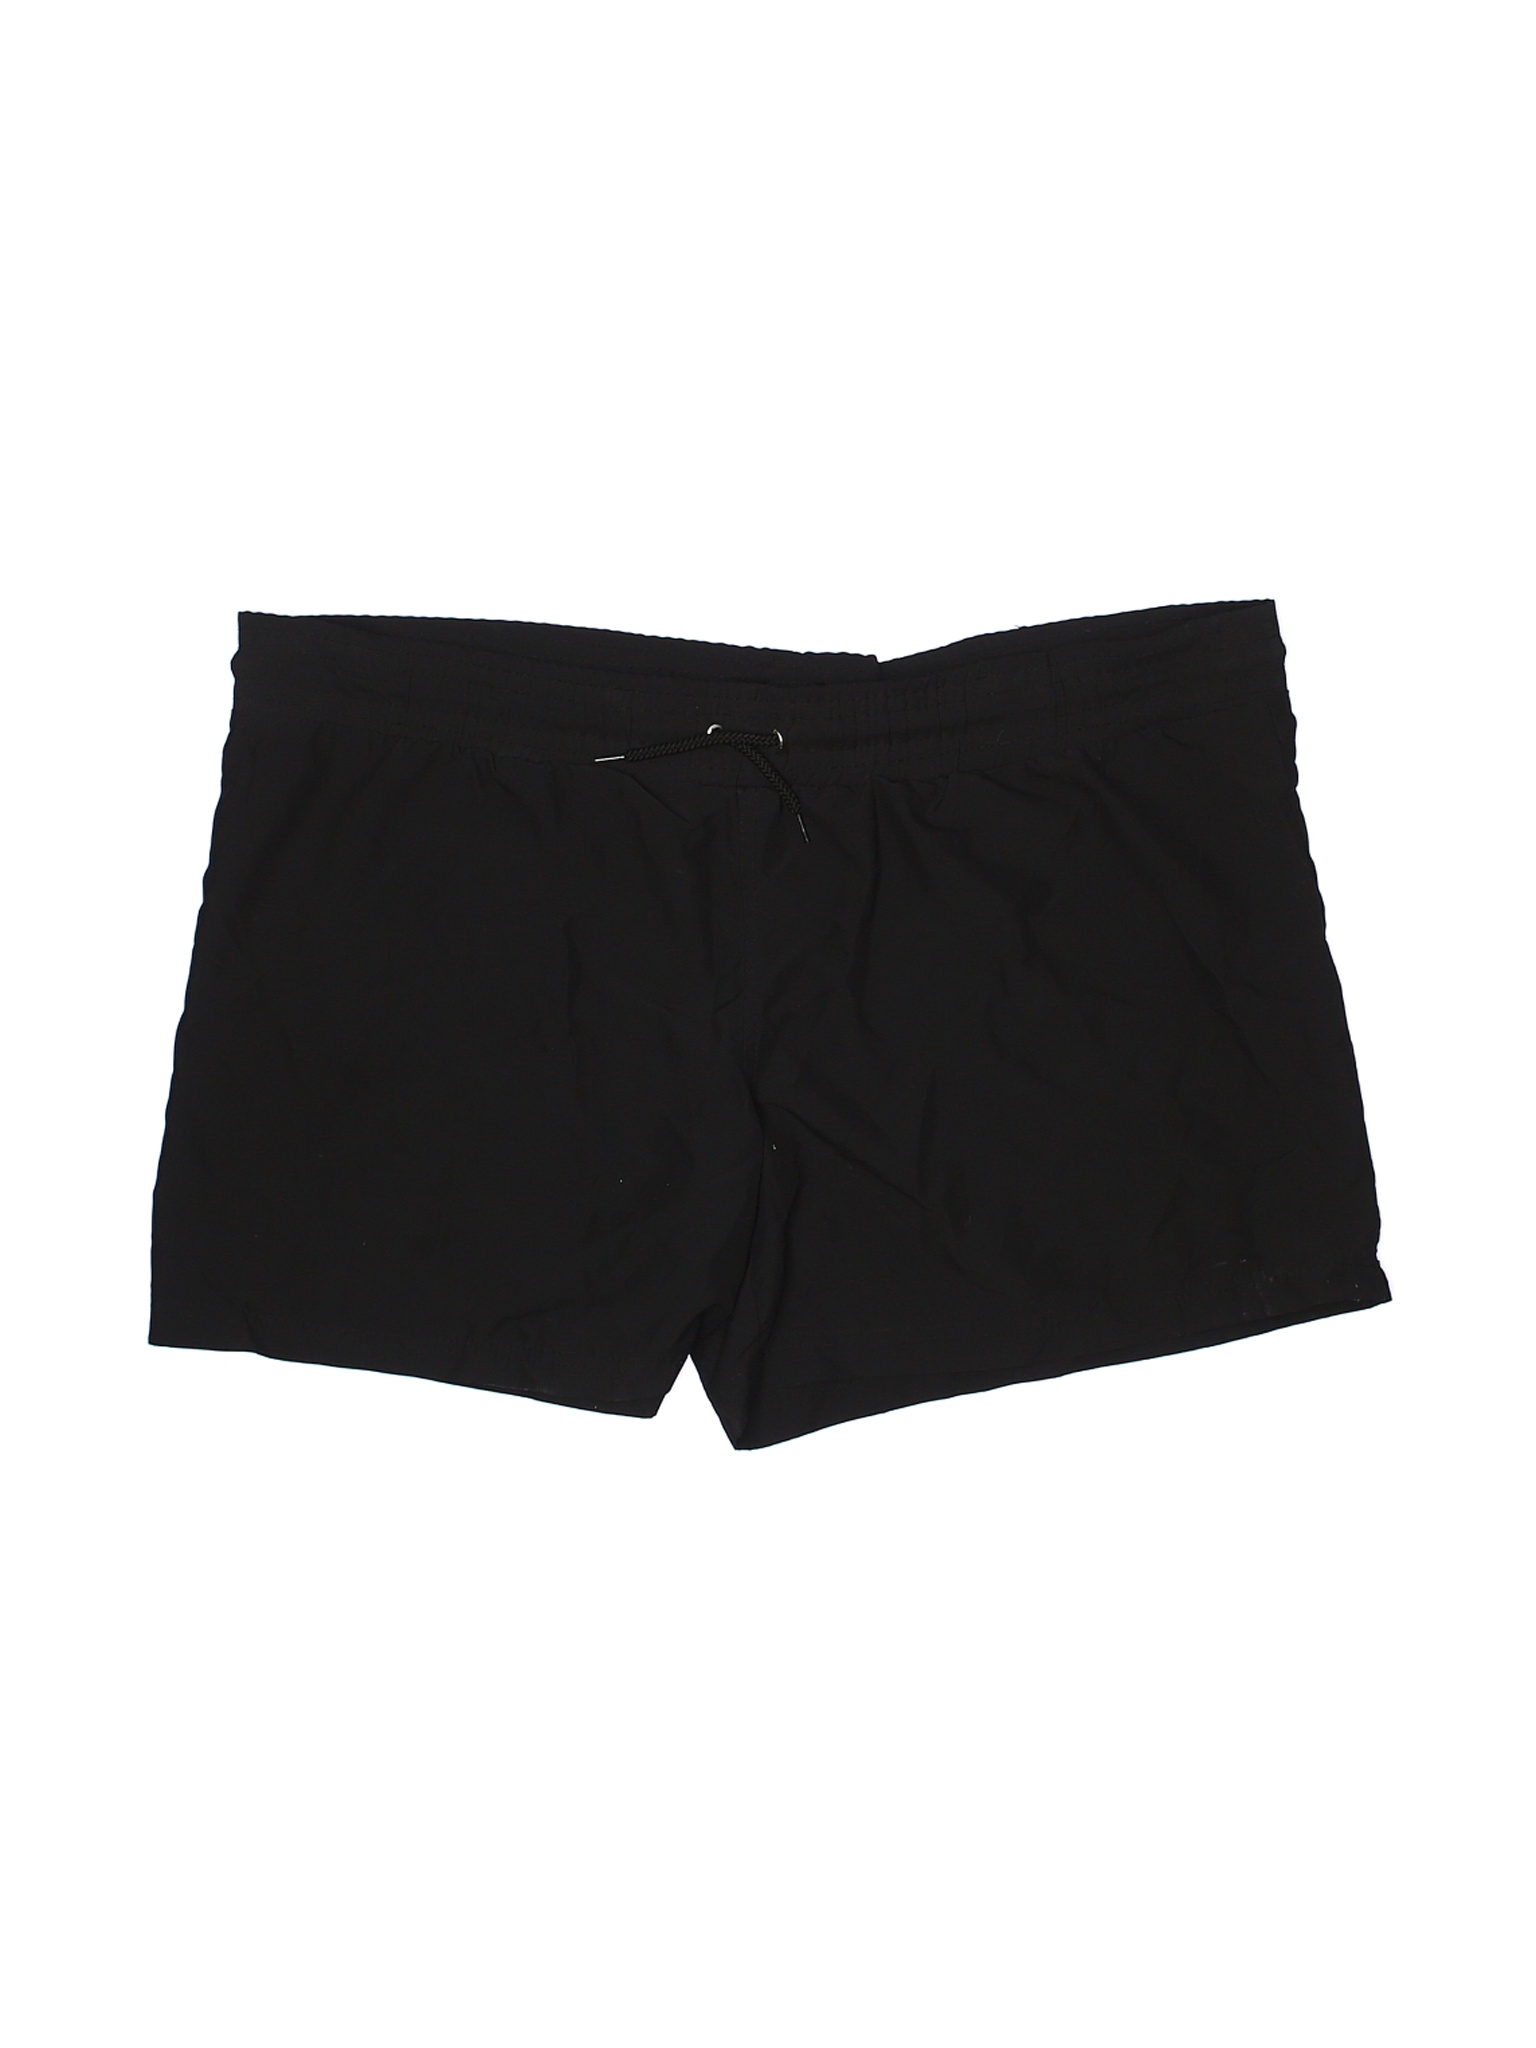 Ava & Viv Women Black Shorts 16 | eBay